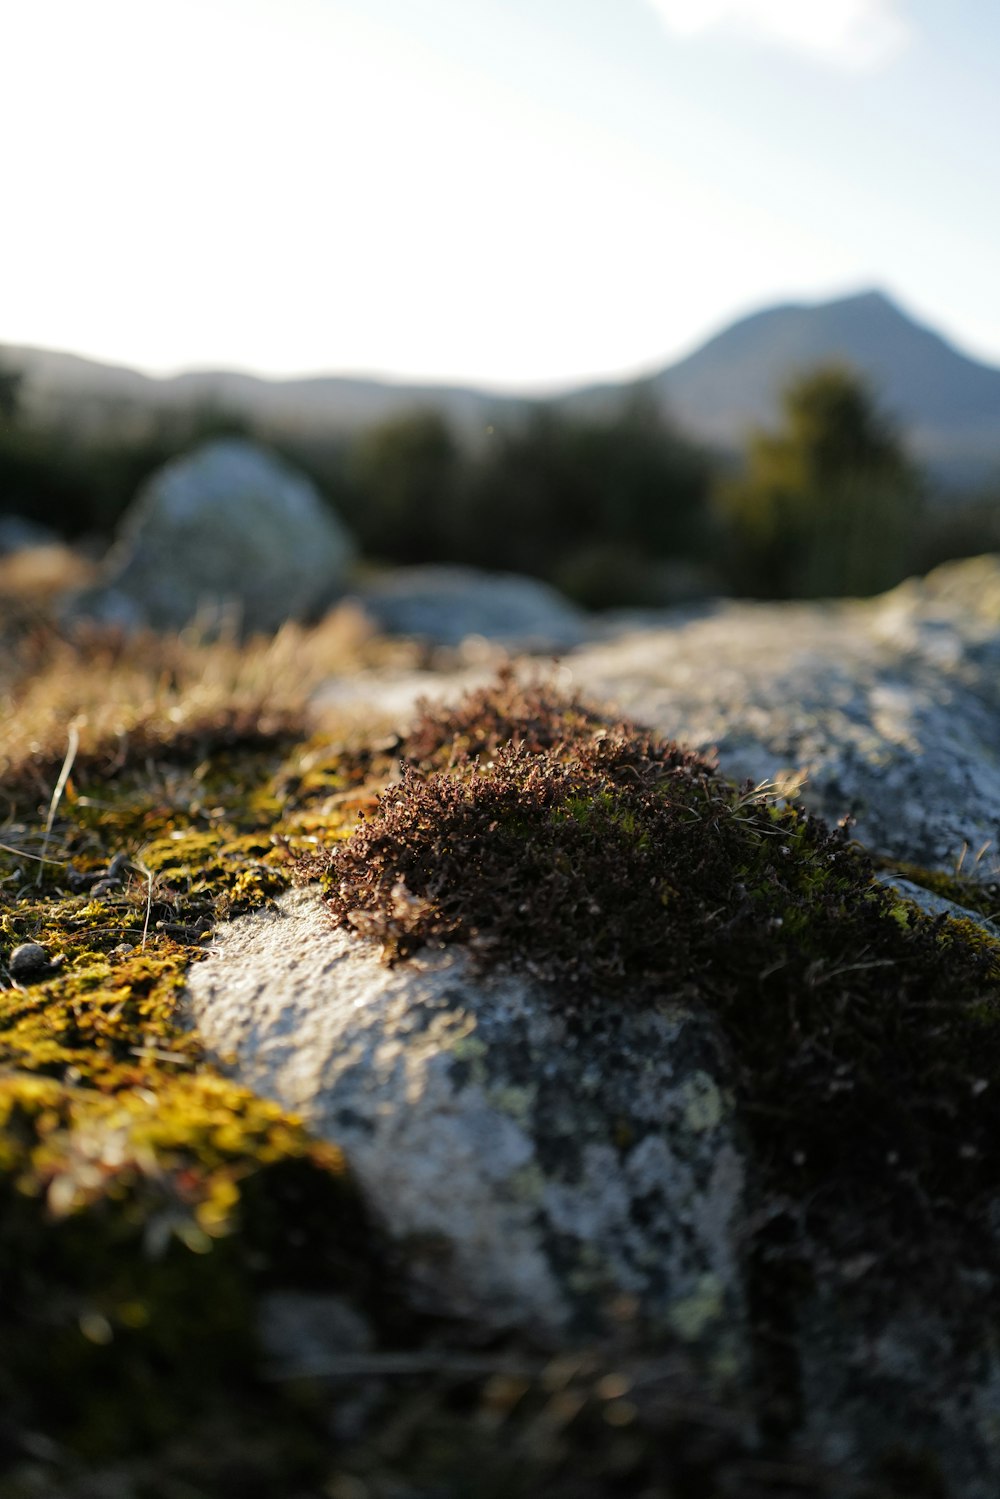 um close up de uma rocha com musgo crescendo sobre ela